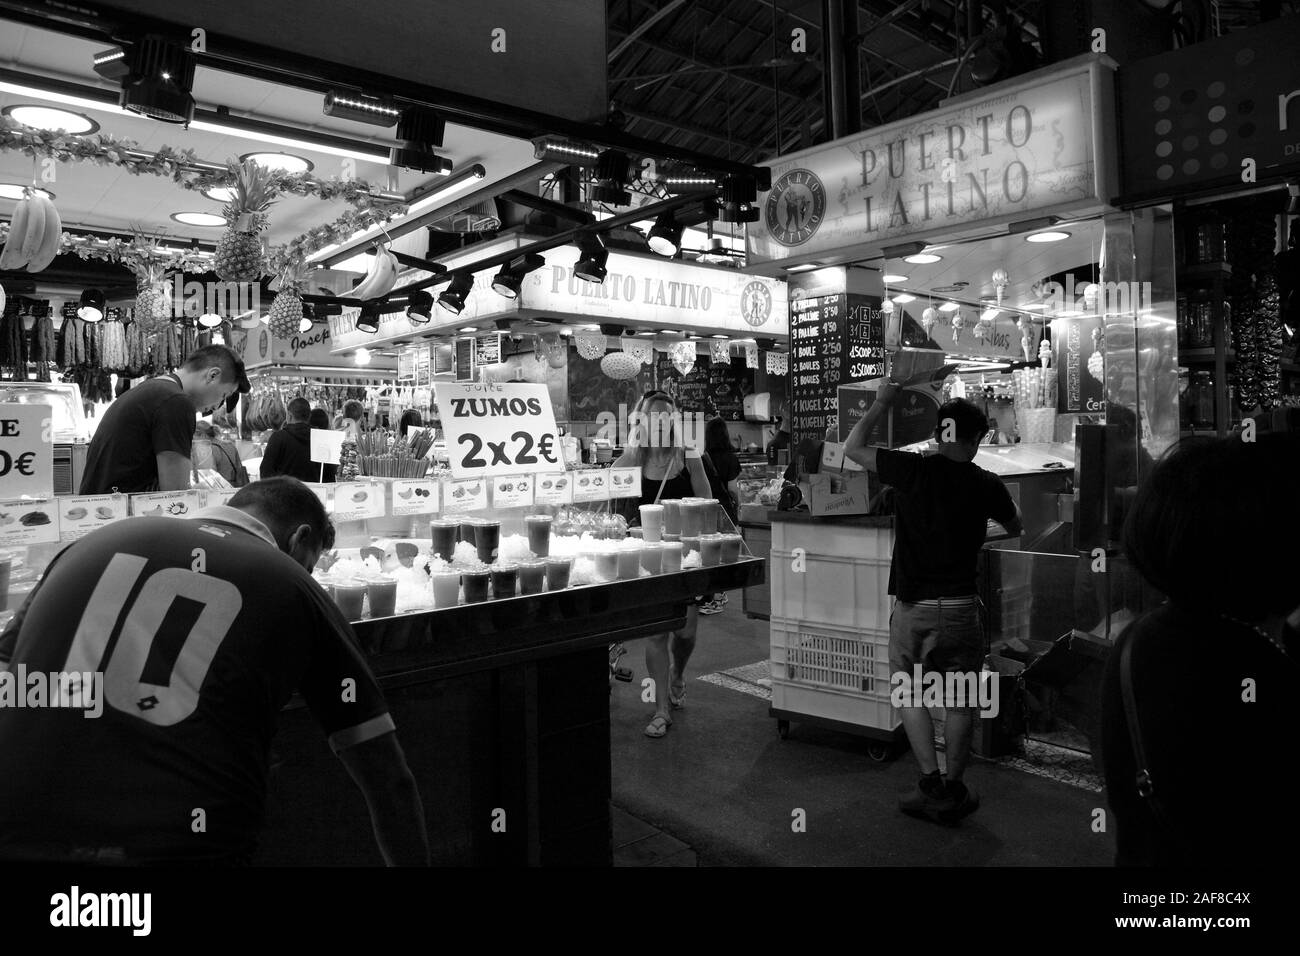 Monochromes Bild von Marktständen verkaufen verschiedene Getränke und innerhalb der Mercado de La Boquerioa in Barcelona. Stockfoto